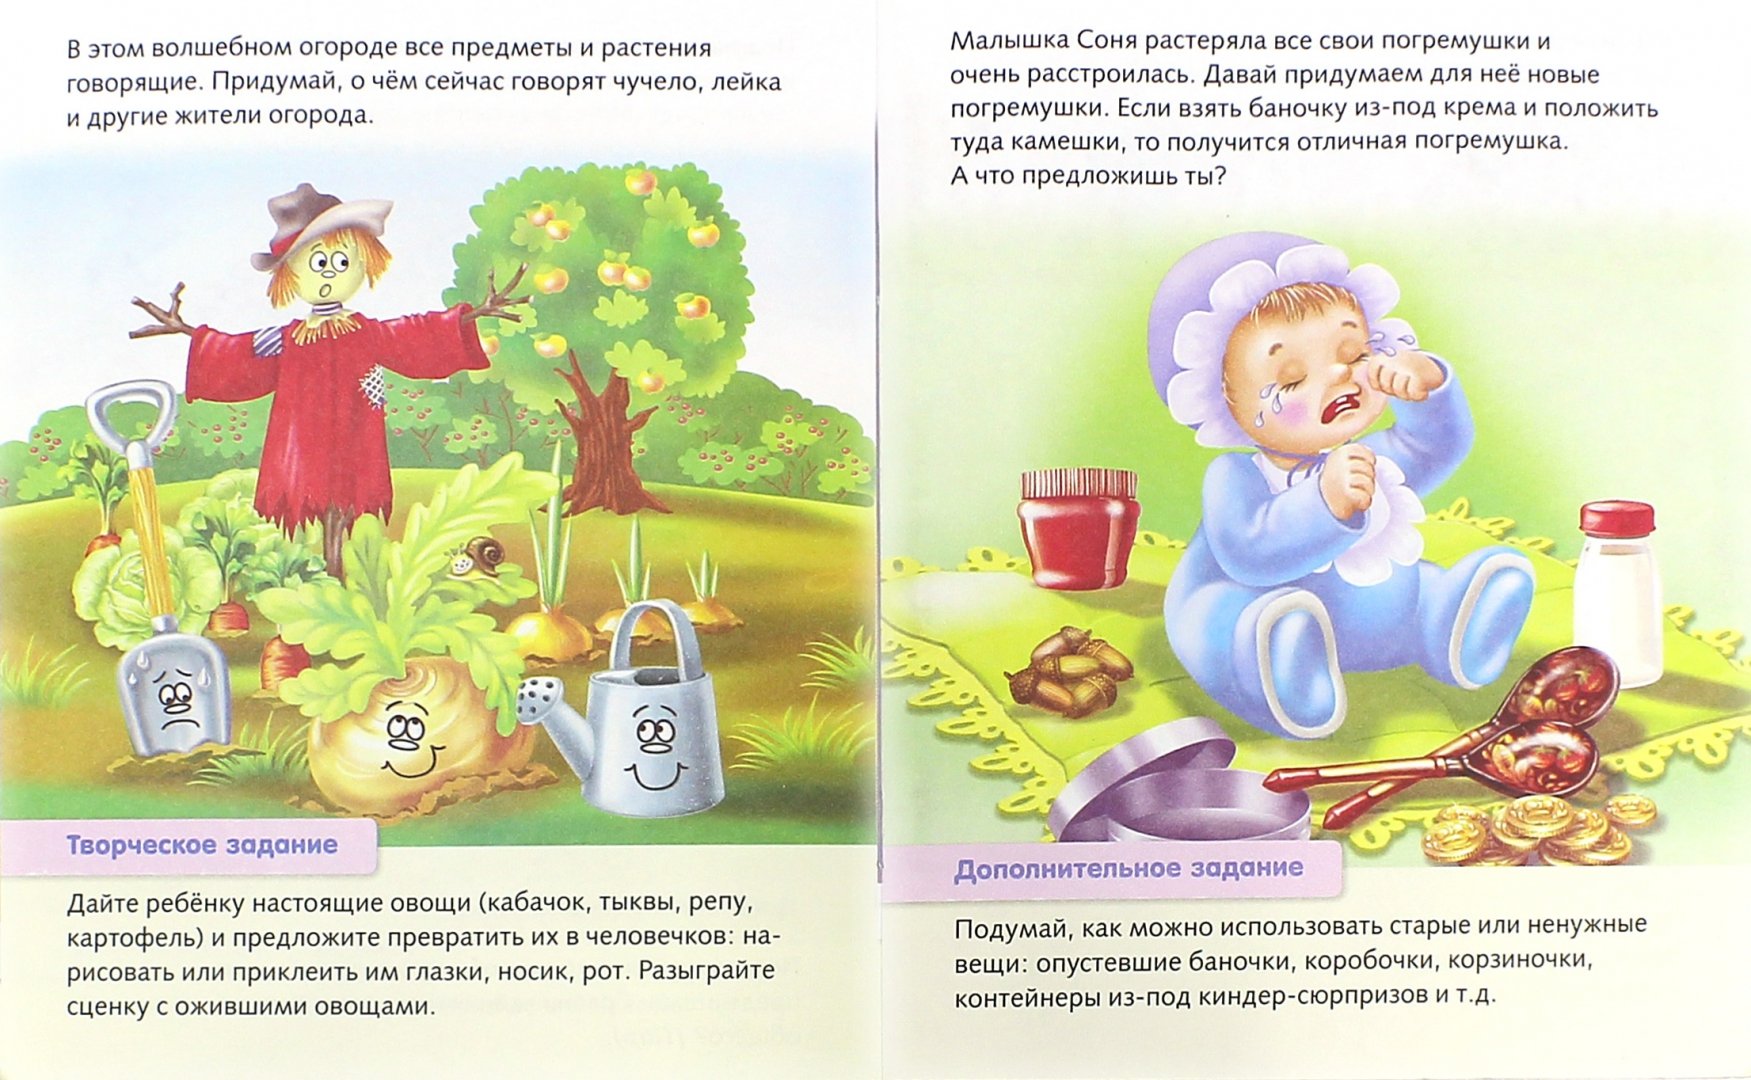 Иллюстрация 1 из 14 для Развитие воображения. Для 6-7 лет - Марина Султанова | Лабиринт - книги. Источник: Лабиринт